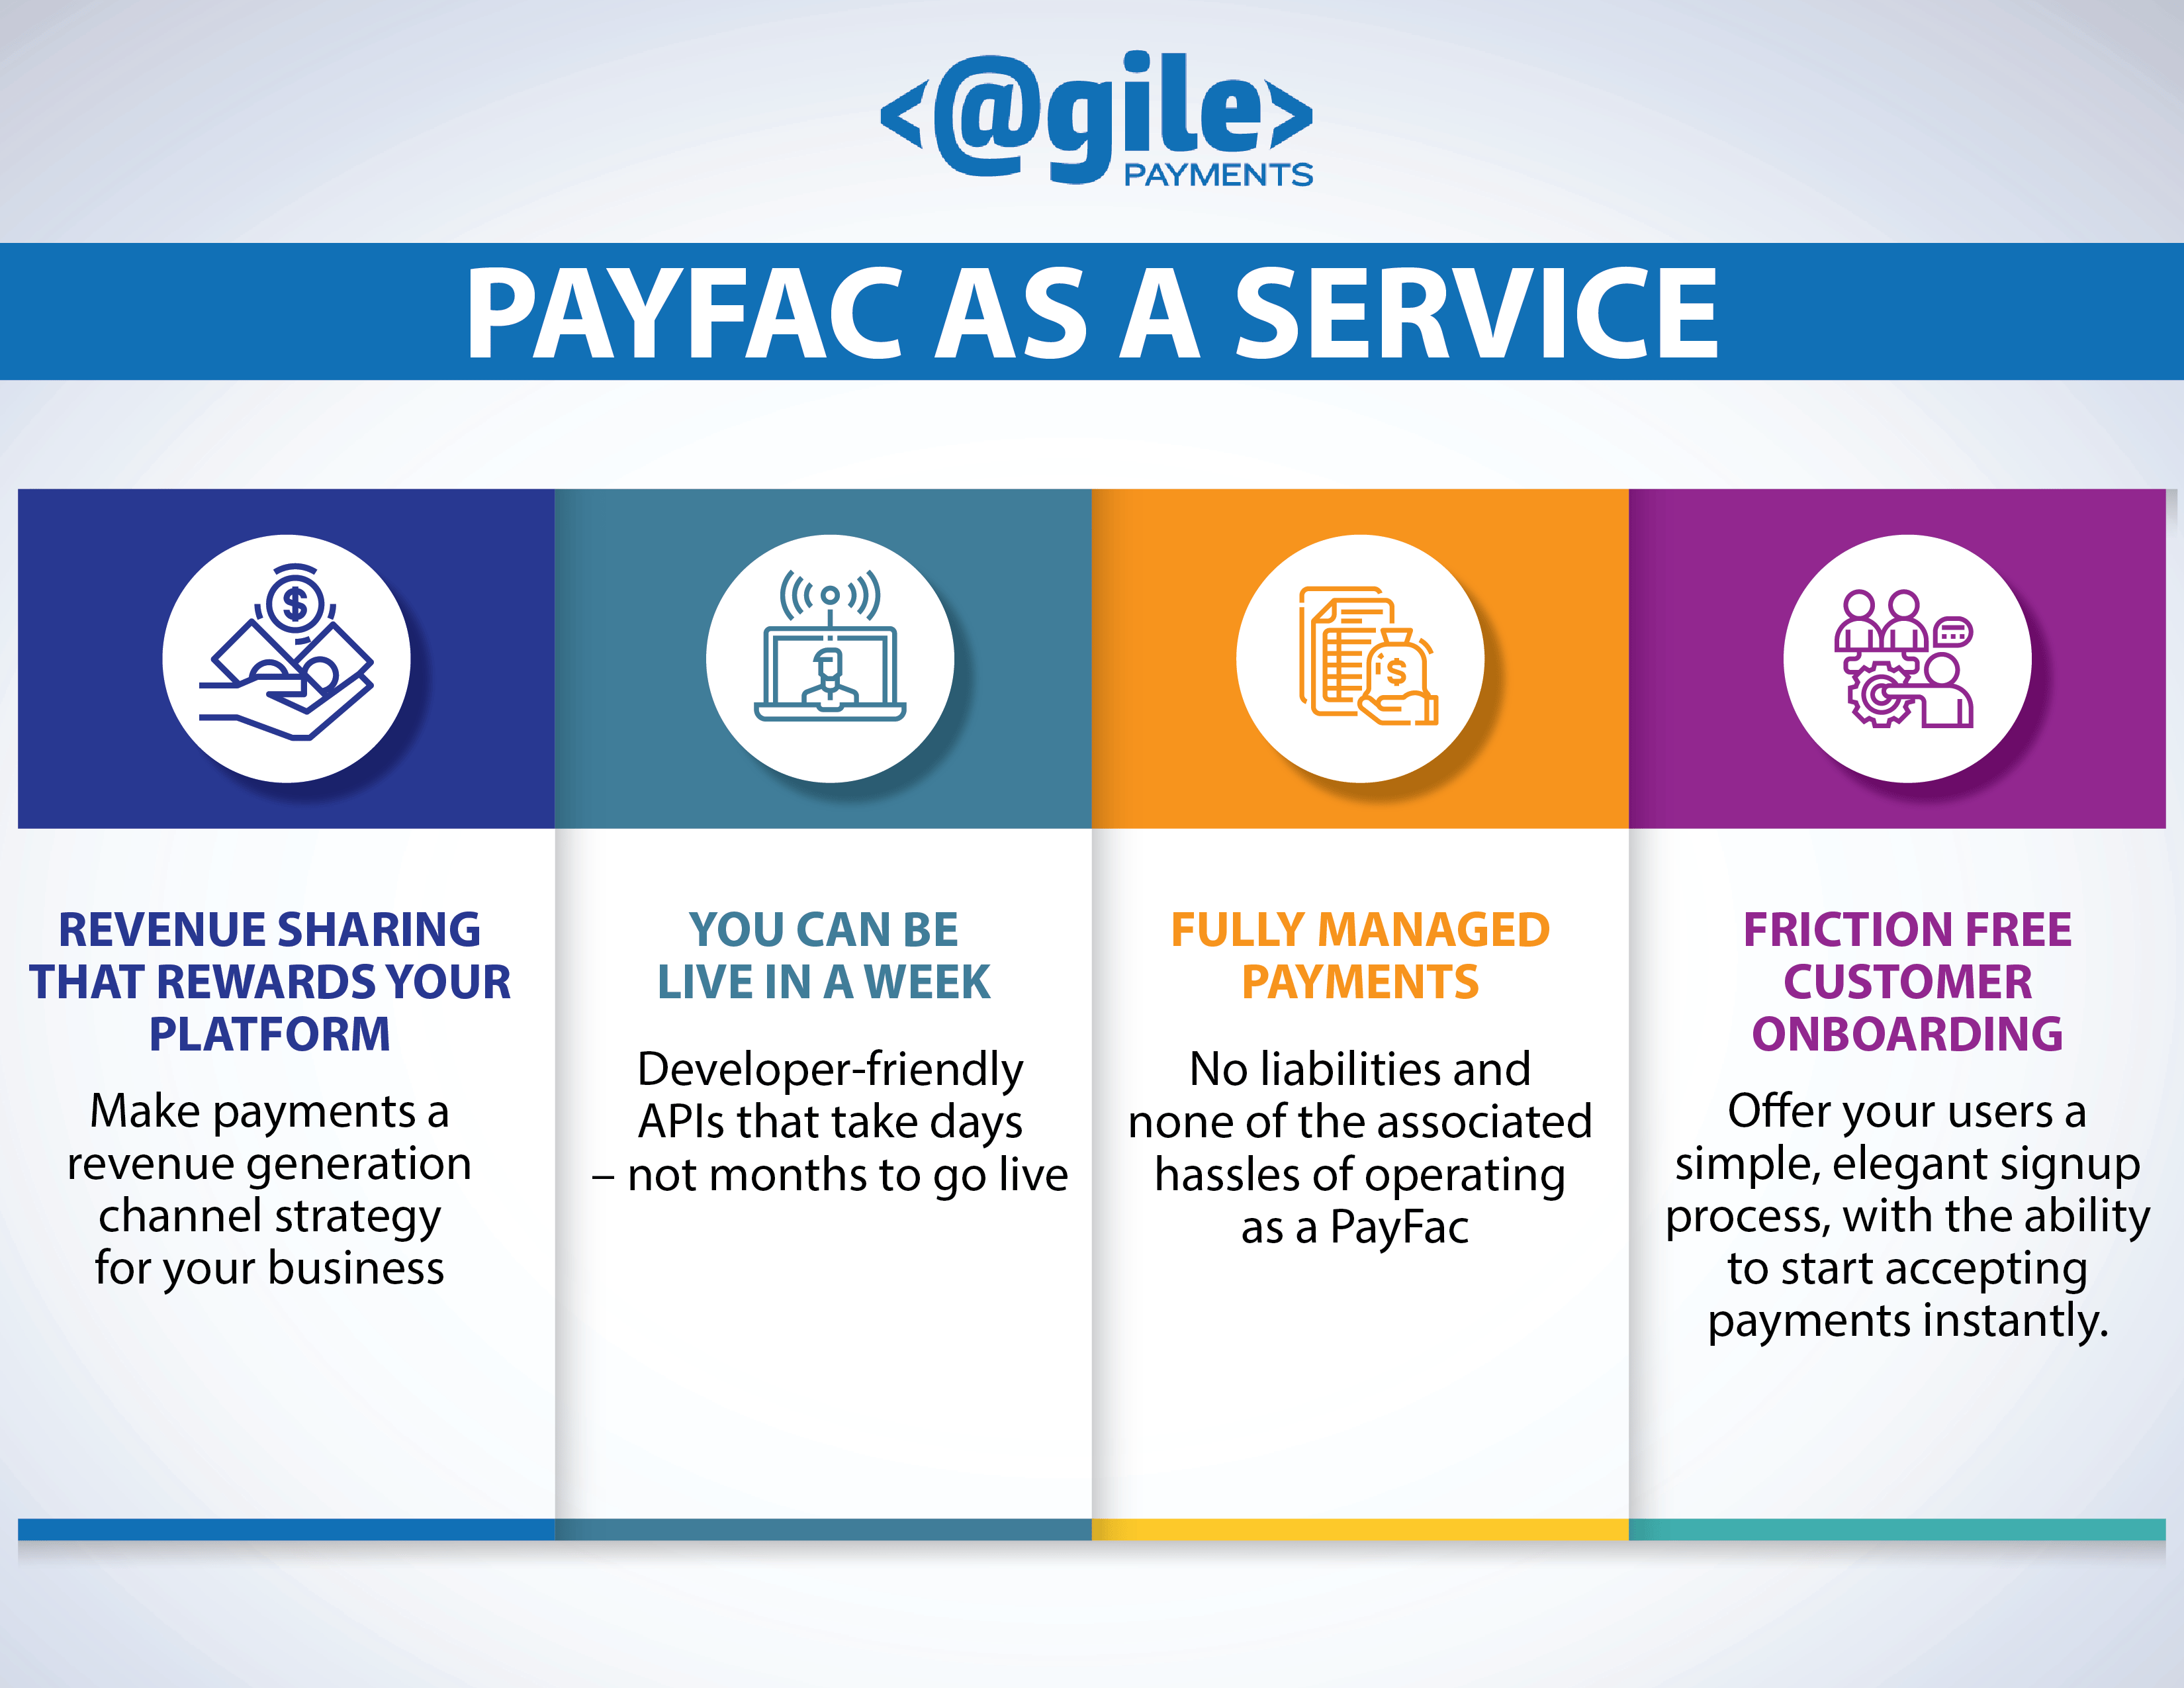 PayFac as a Service